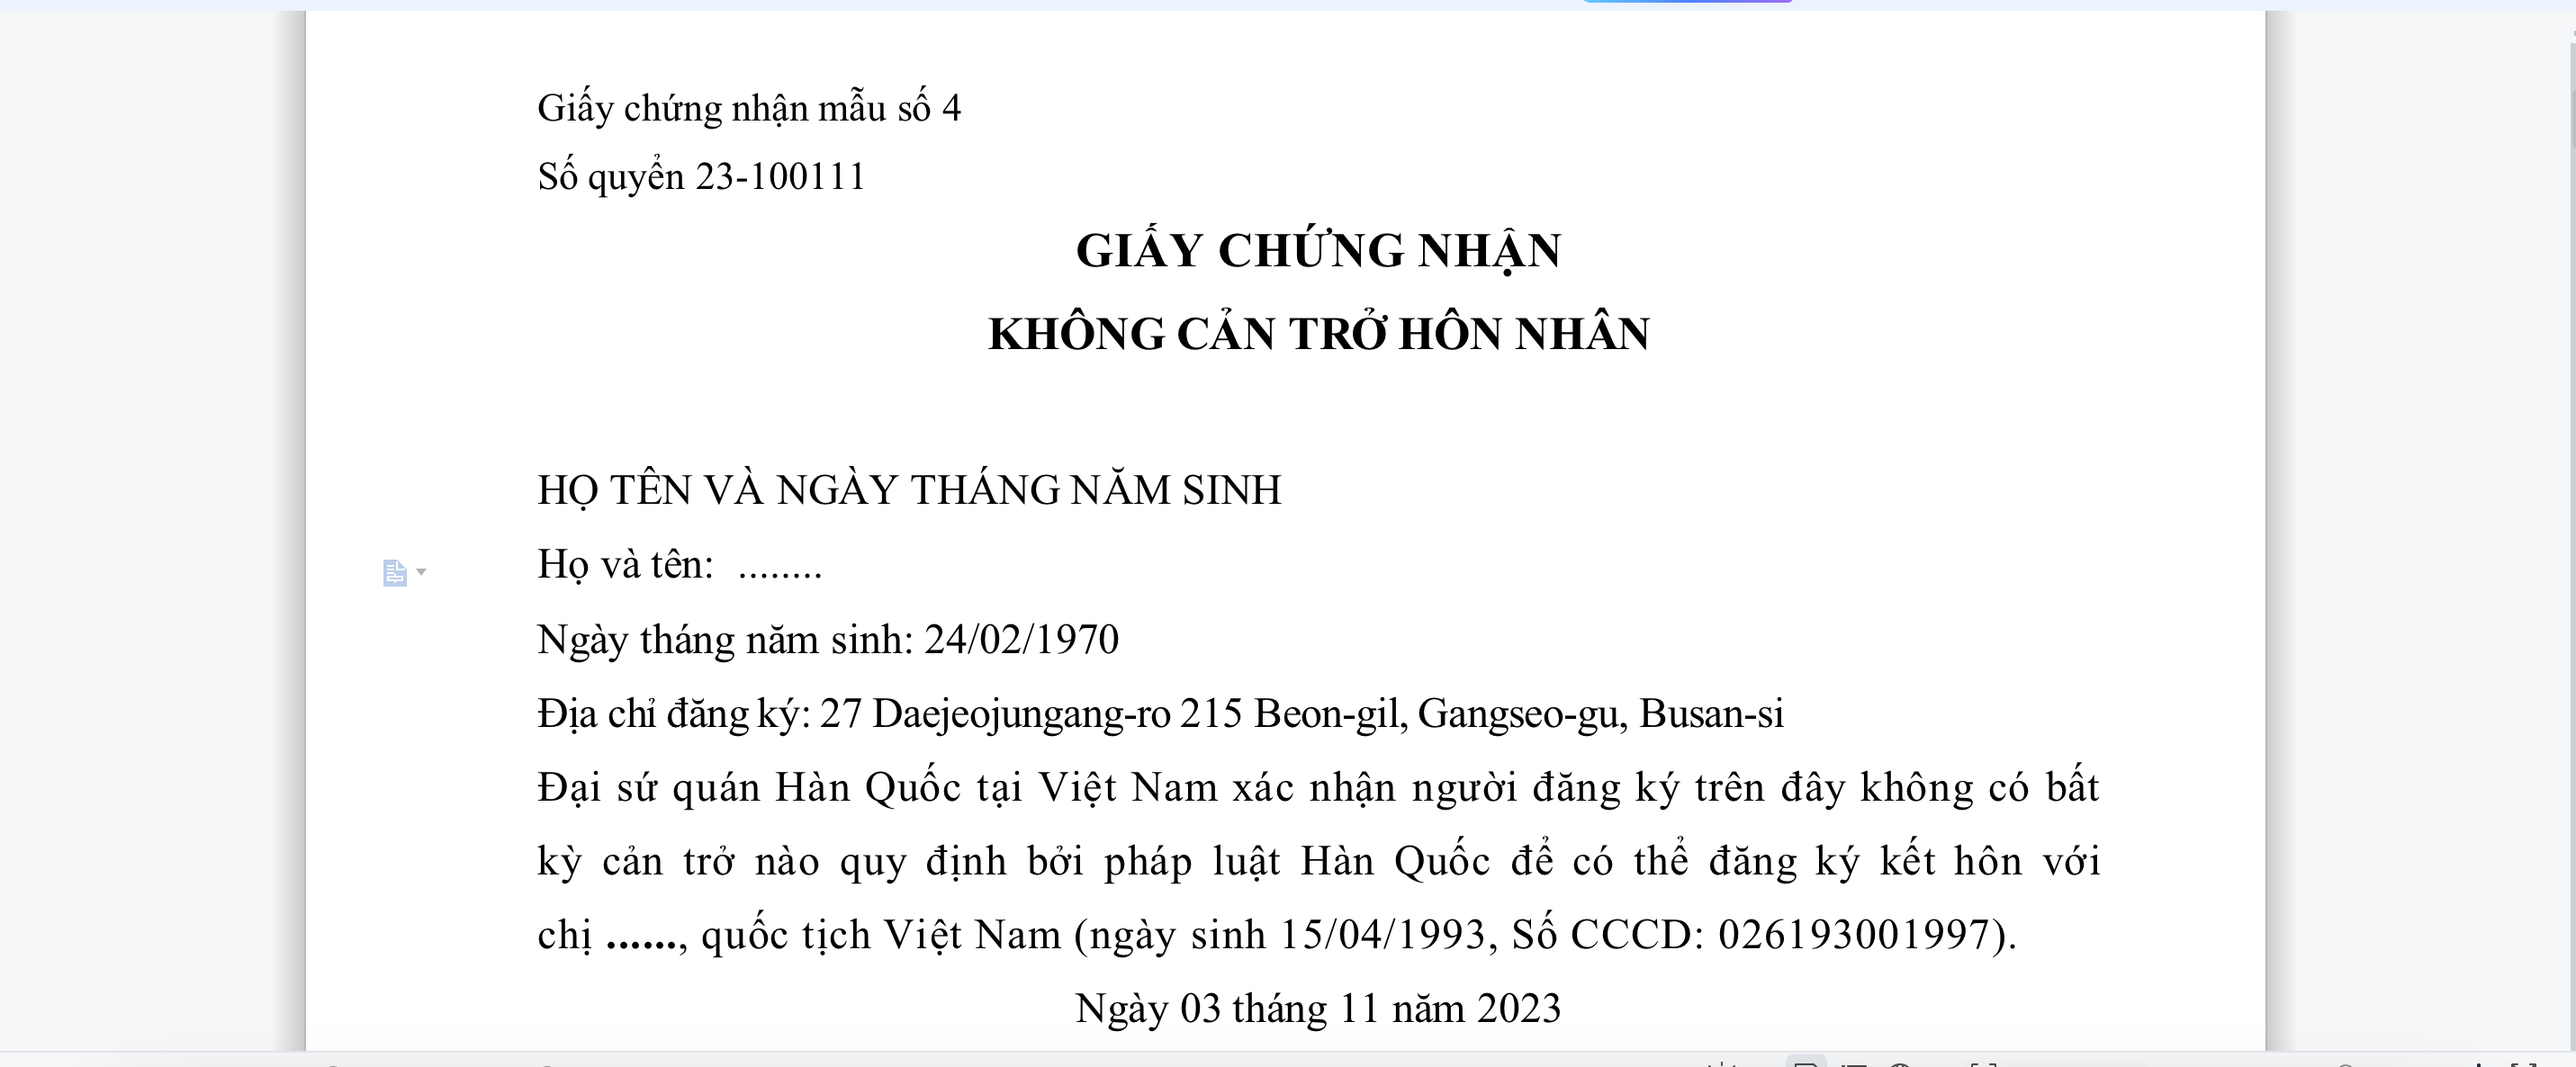 Mẫu giấy tờ kết hôn với người Hàn Quốc, tại cơ quan có thẩm quyền của Việt Nam.